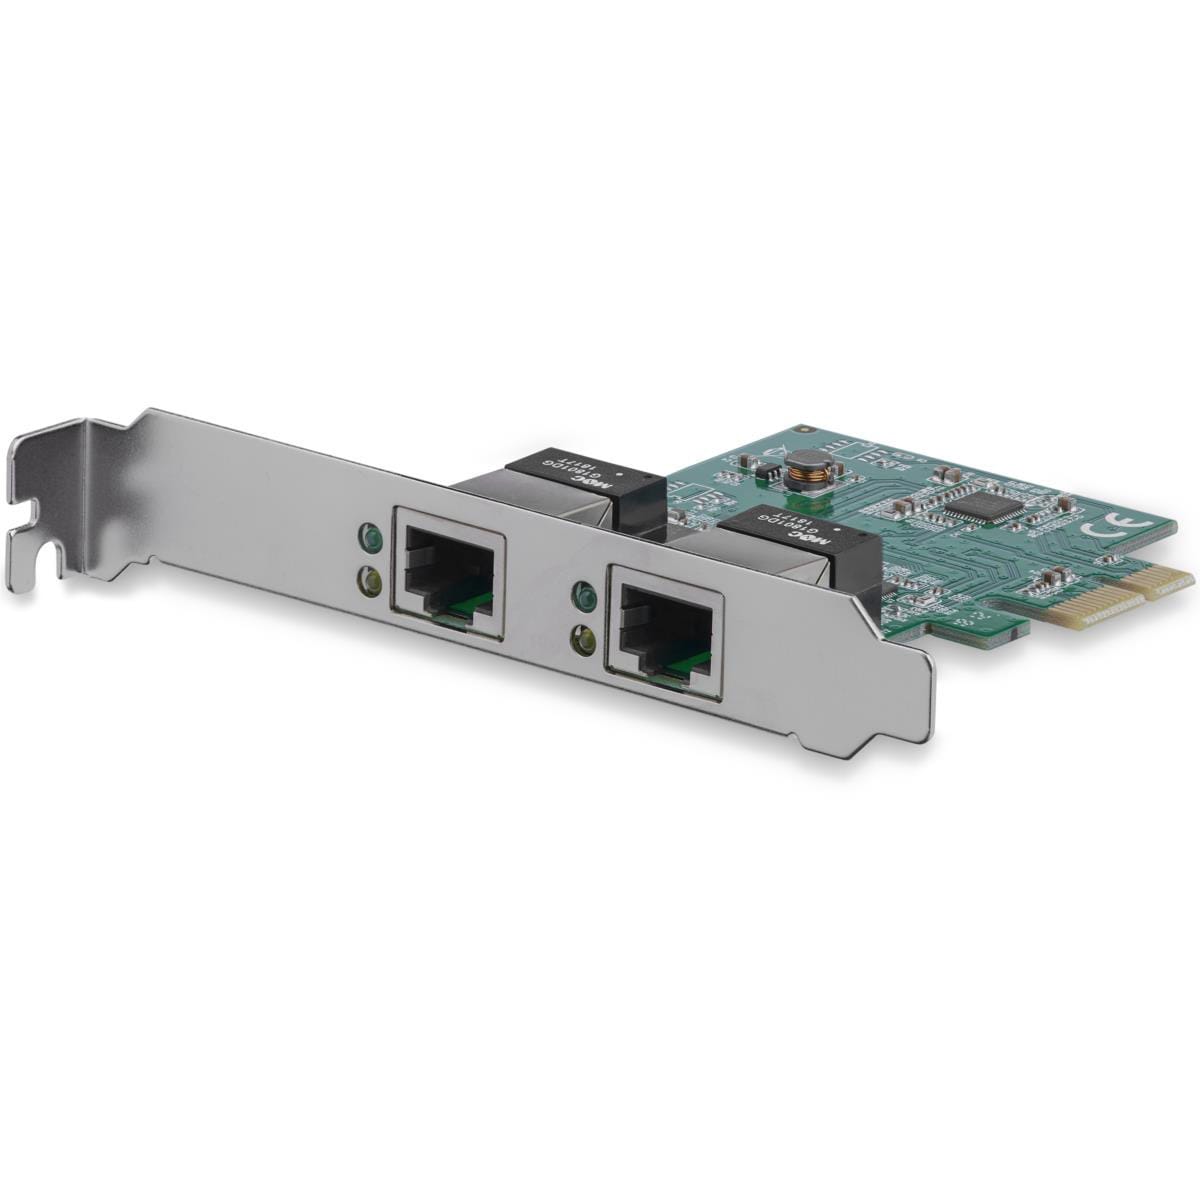 素晴らしい外見 2ポート増設PCI ギガビットイーサネット StarTech.com 